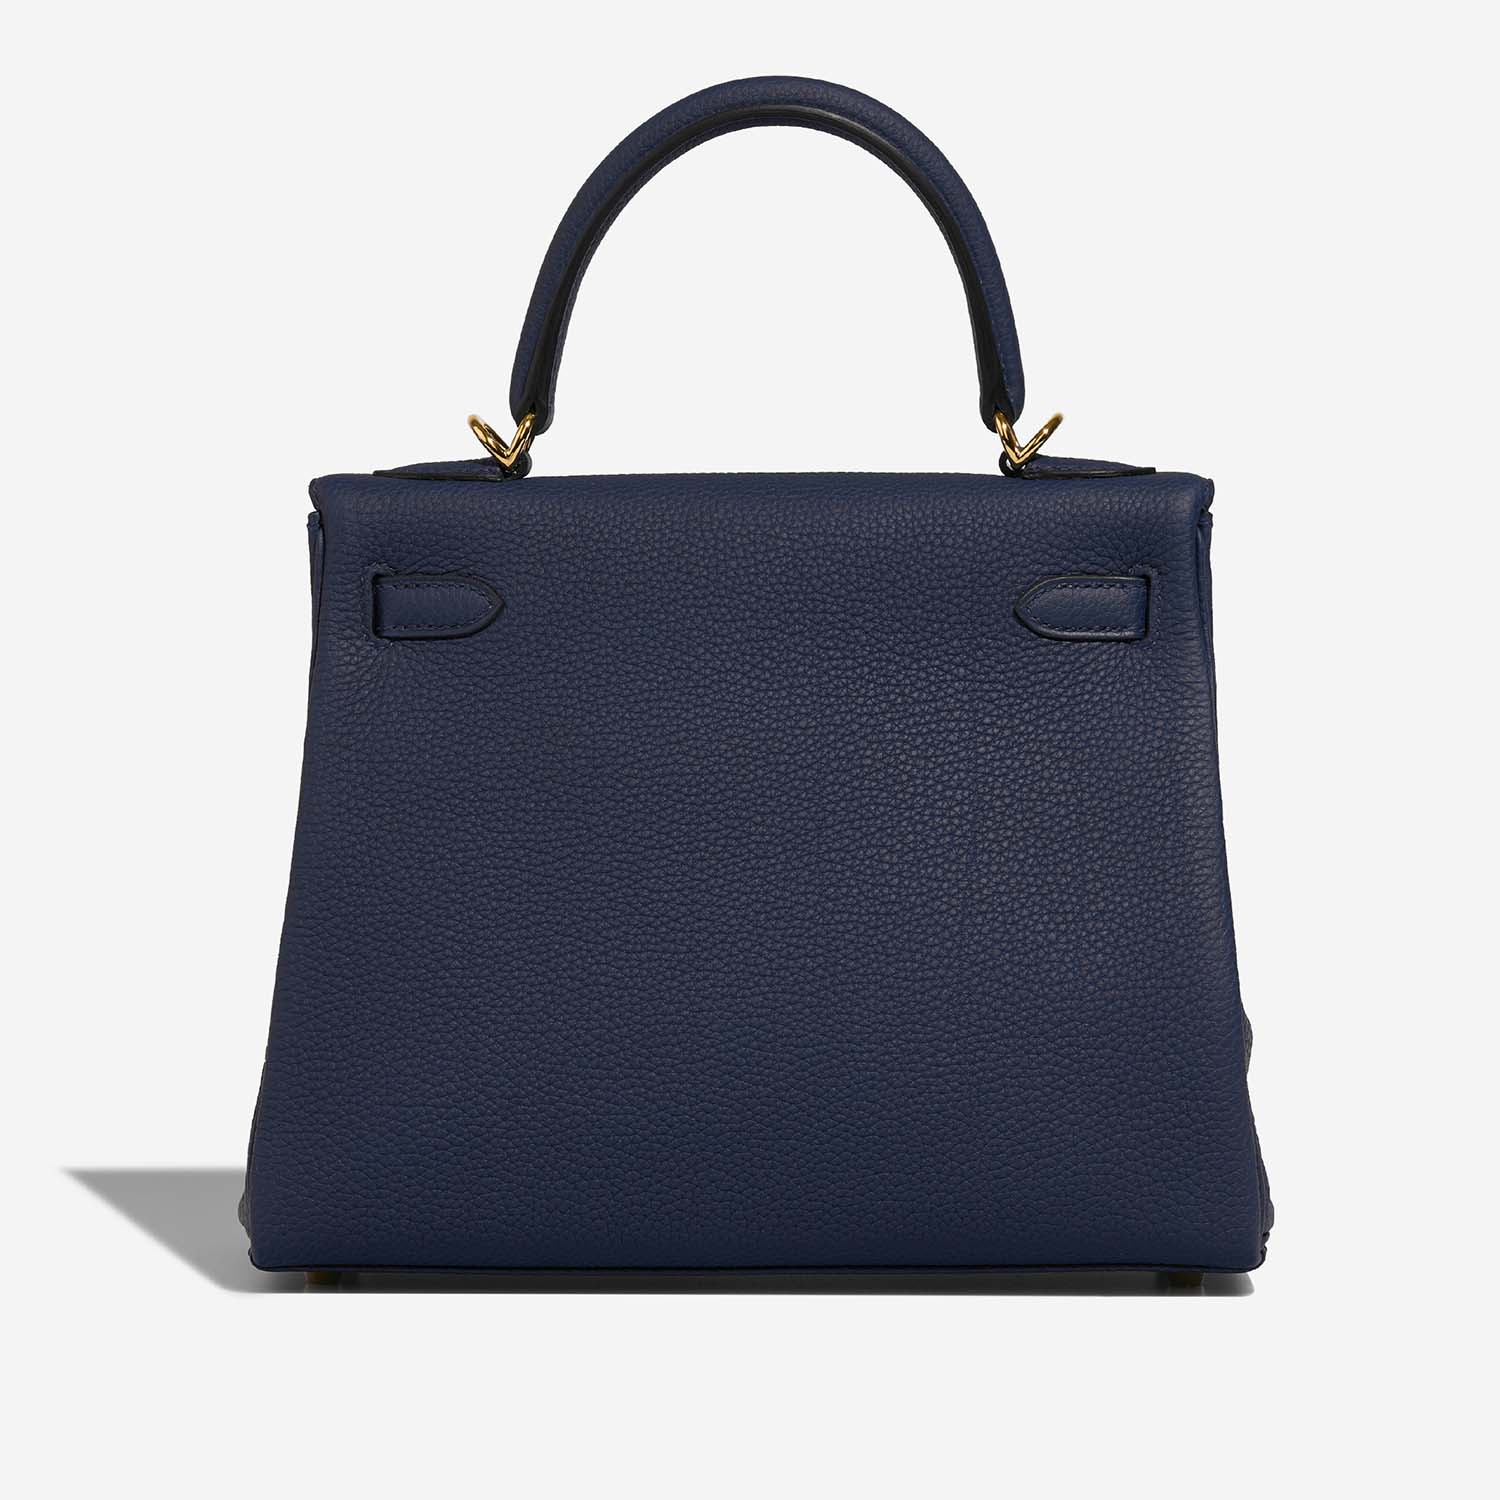 Hermès Kelly 25 BlueSaphir Zurück | Verkaufen Sie Ihre Designertasche auf Saclab.com